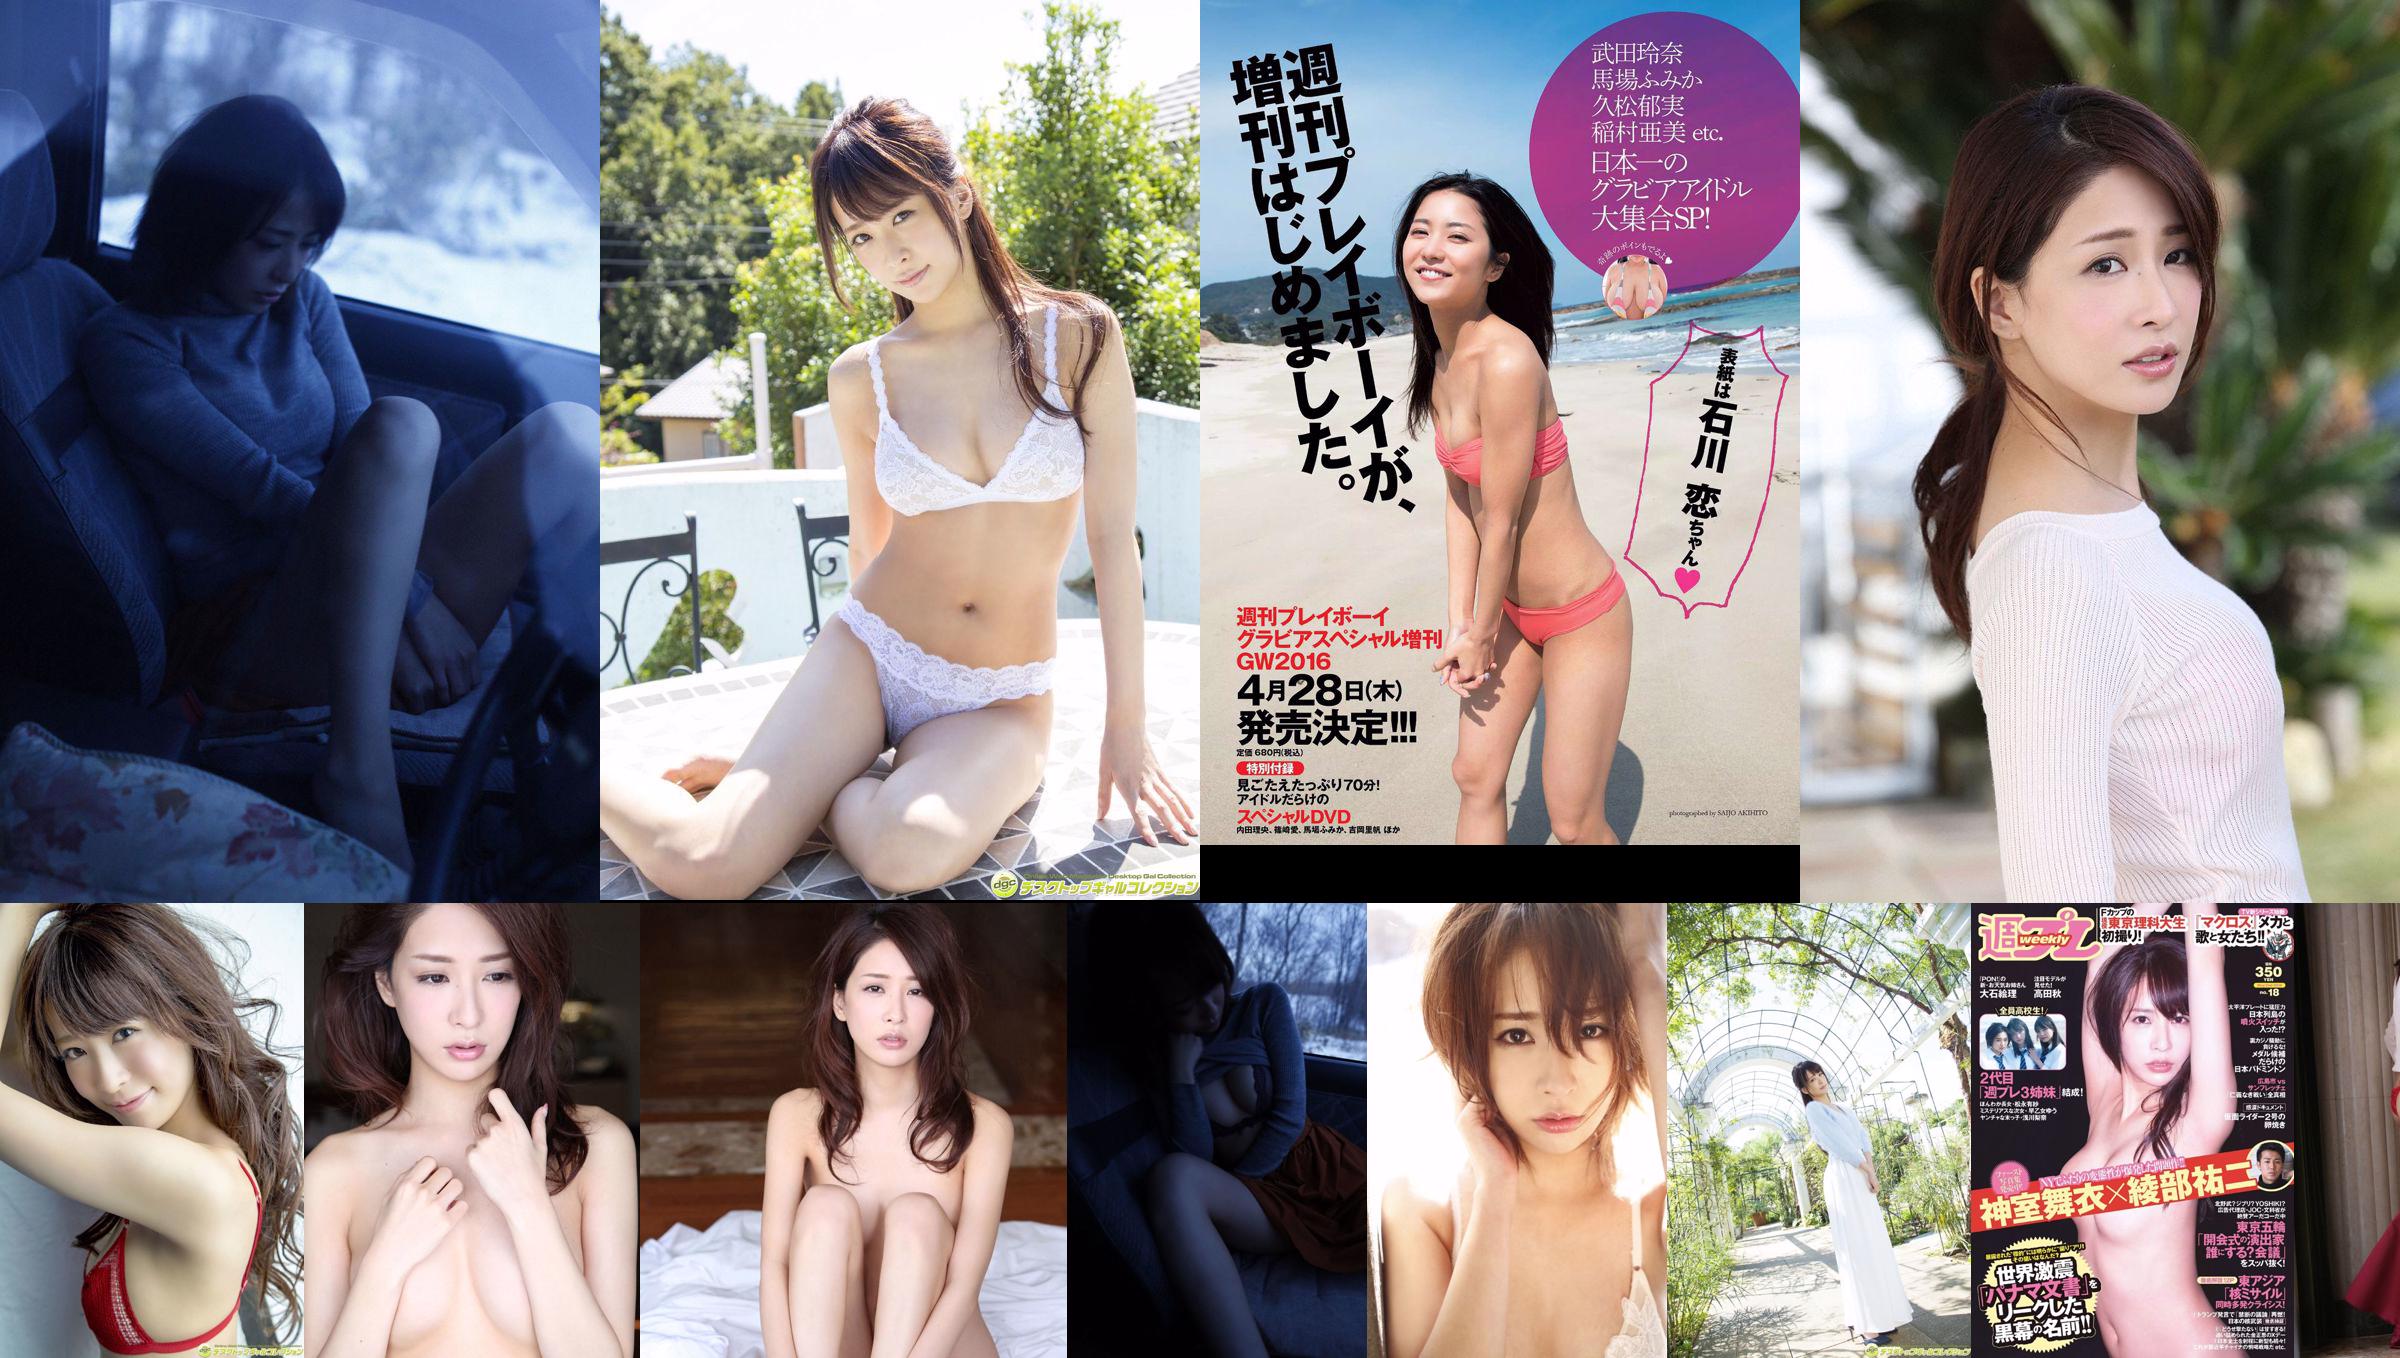 Mai Kamuro Arisa Matsunaga Yu Saotome Rina Asakawa Shu Takada Ayana Takeda Eri Oishi [wekelijkse Playboy] 2016 nr 18 foto No.3ce126 Pagina 11